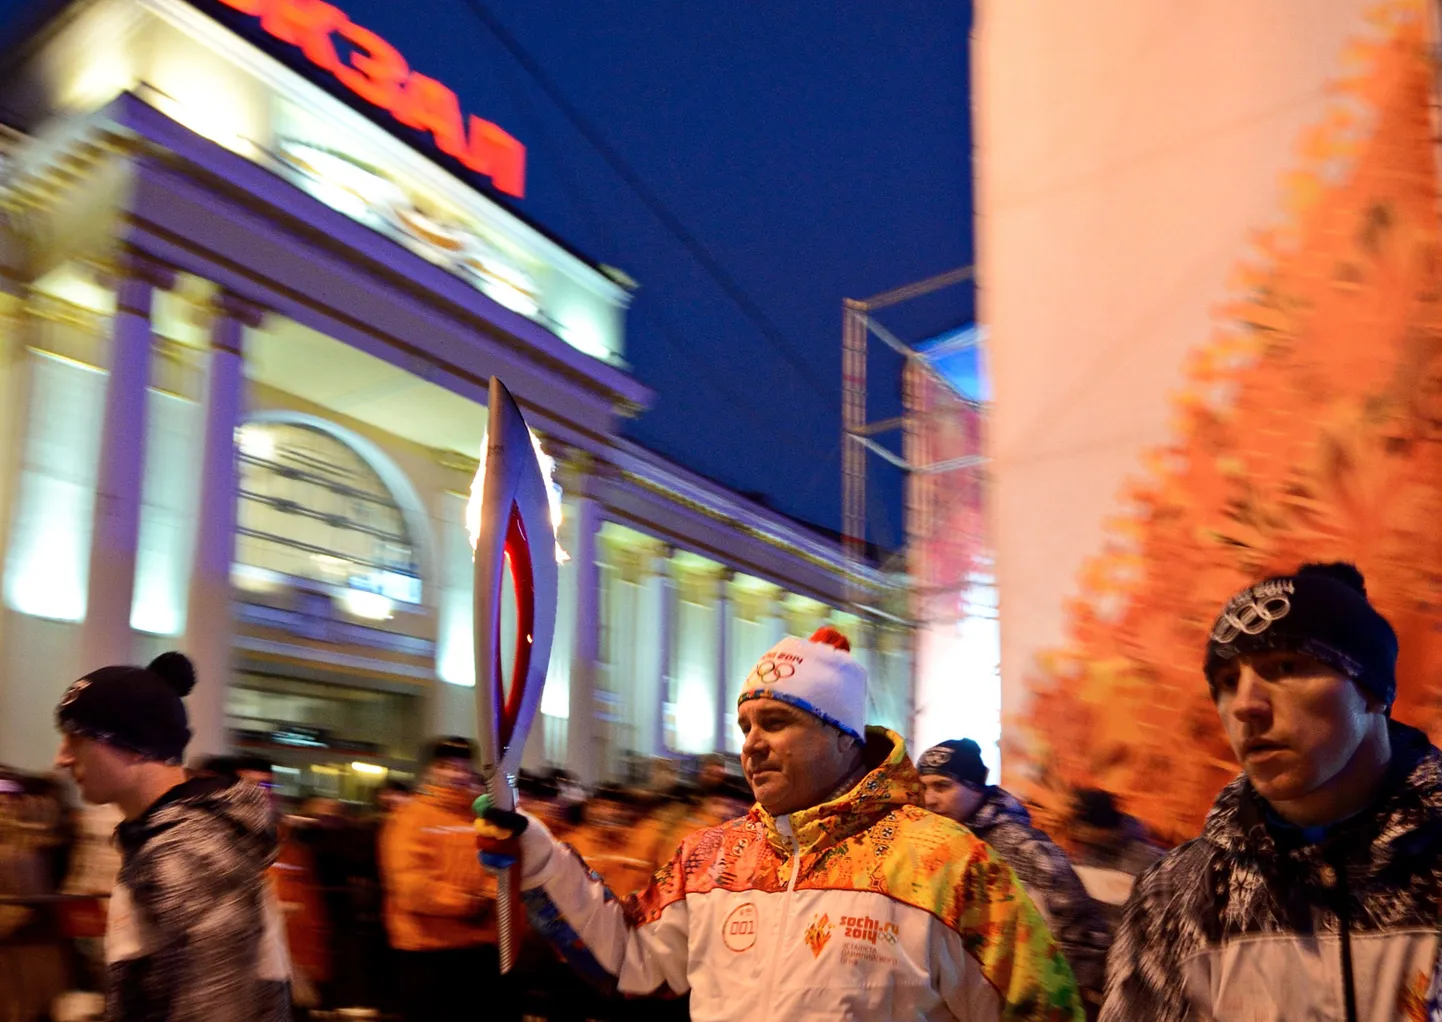 Анатолий Геращенко в факелом олимпийской эстафеты в Екатеринбурге.